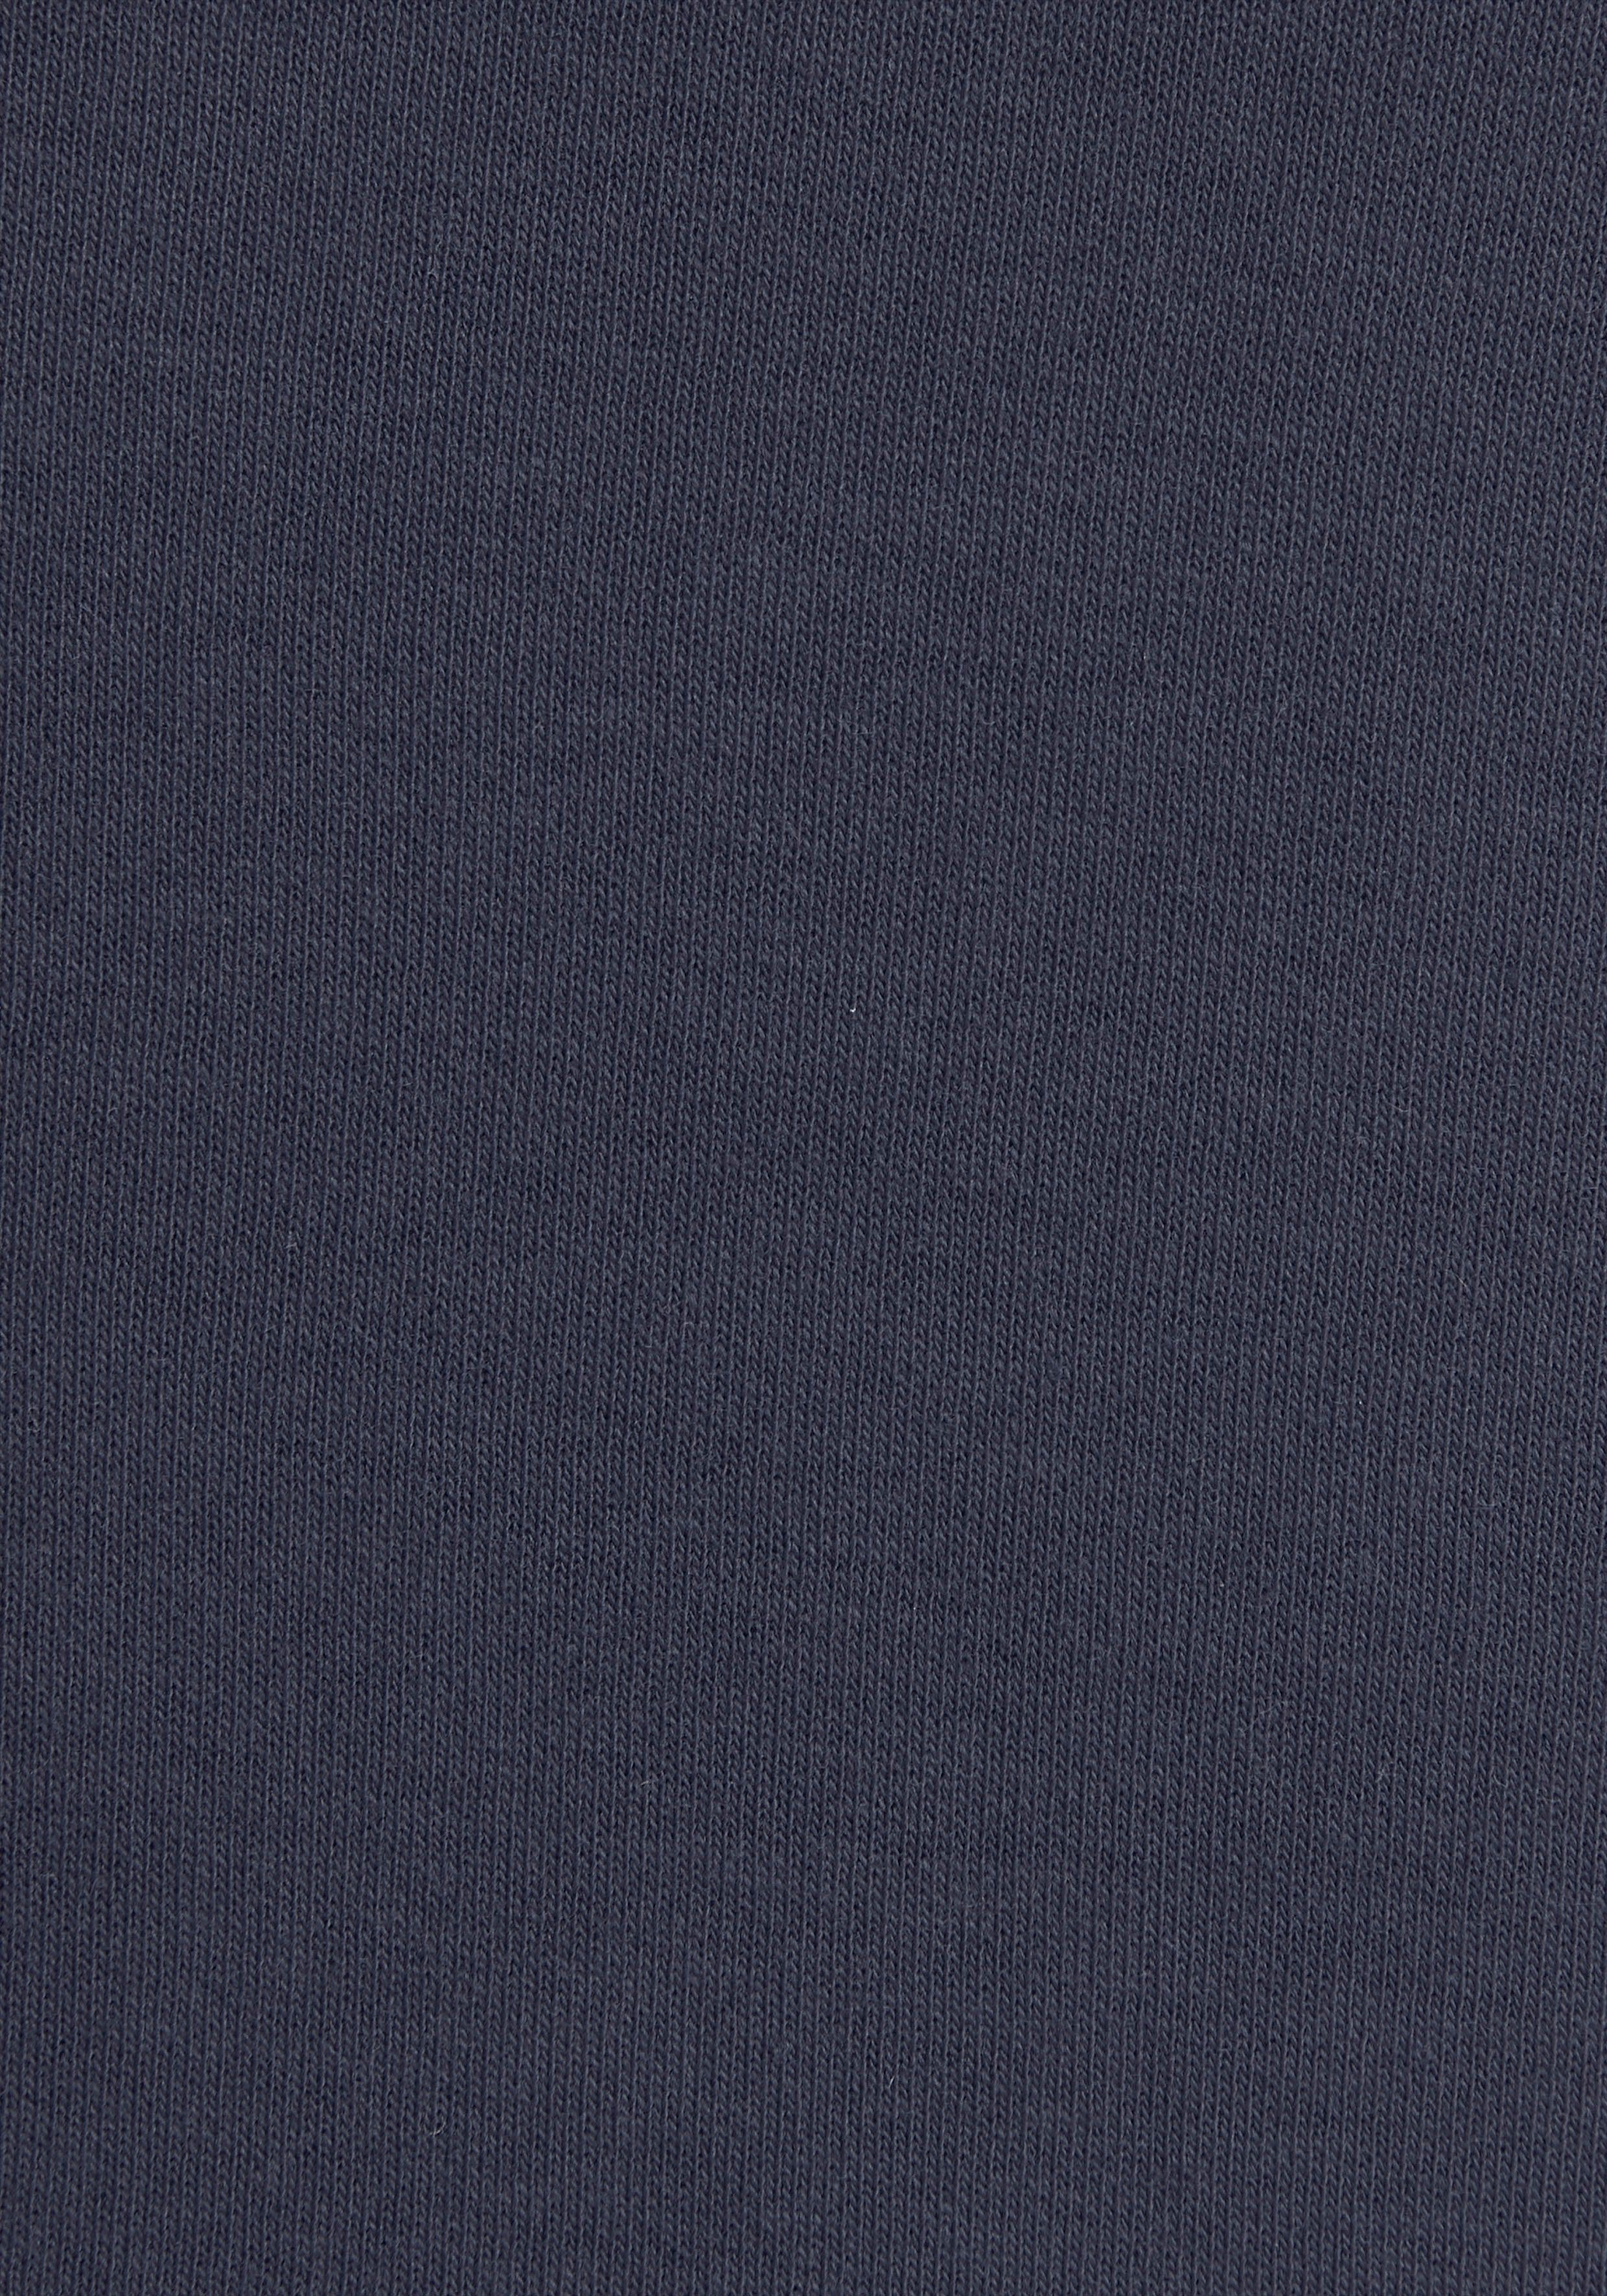 KangaROOS Sweatshirt mit Kontrastfarbenem Logodruck, marine Loungeanzug